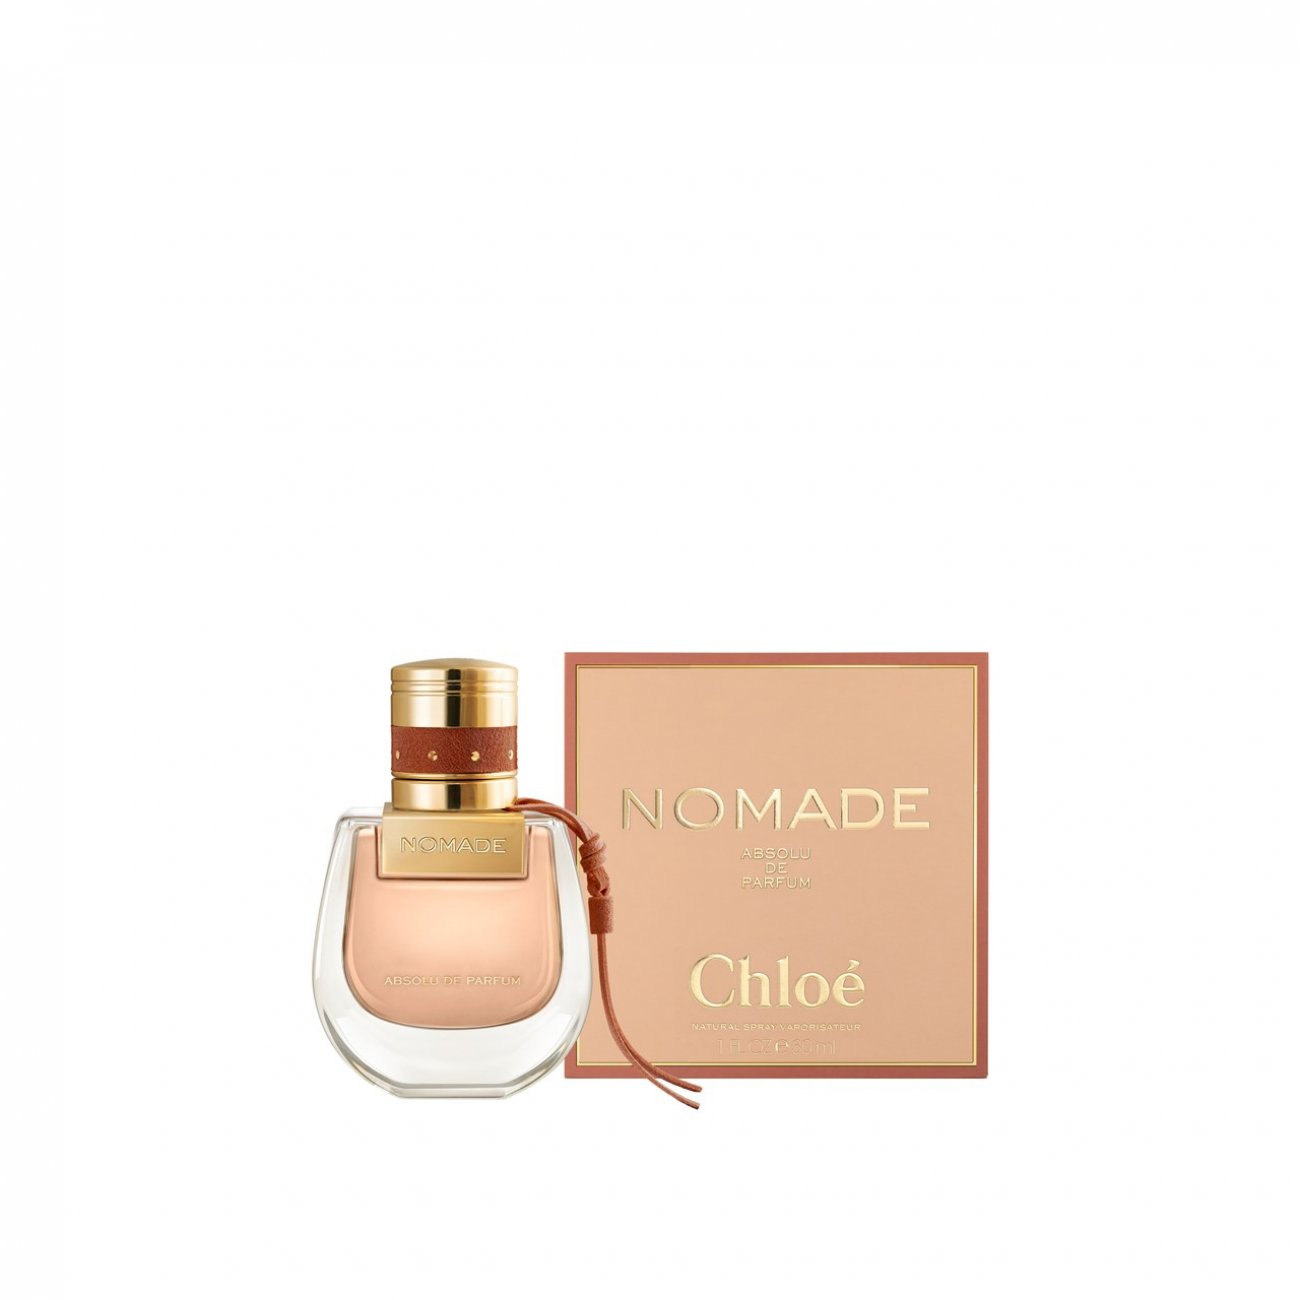 Chloé Nomade Absolu de Parfum Eau de Parfum 50ml Spray